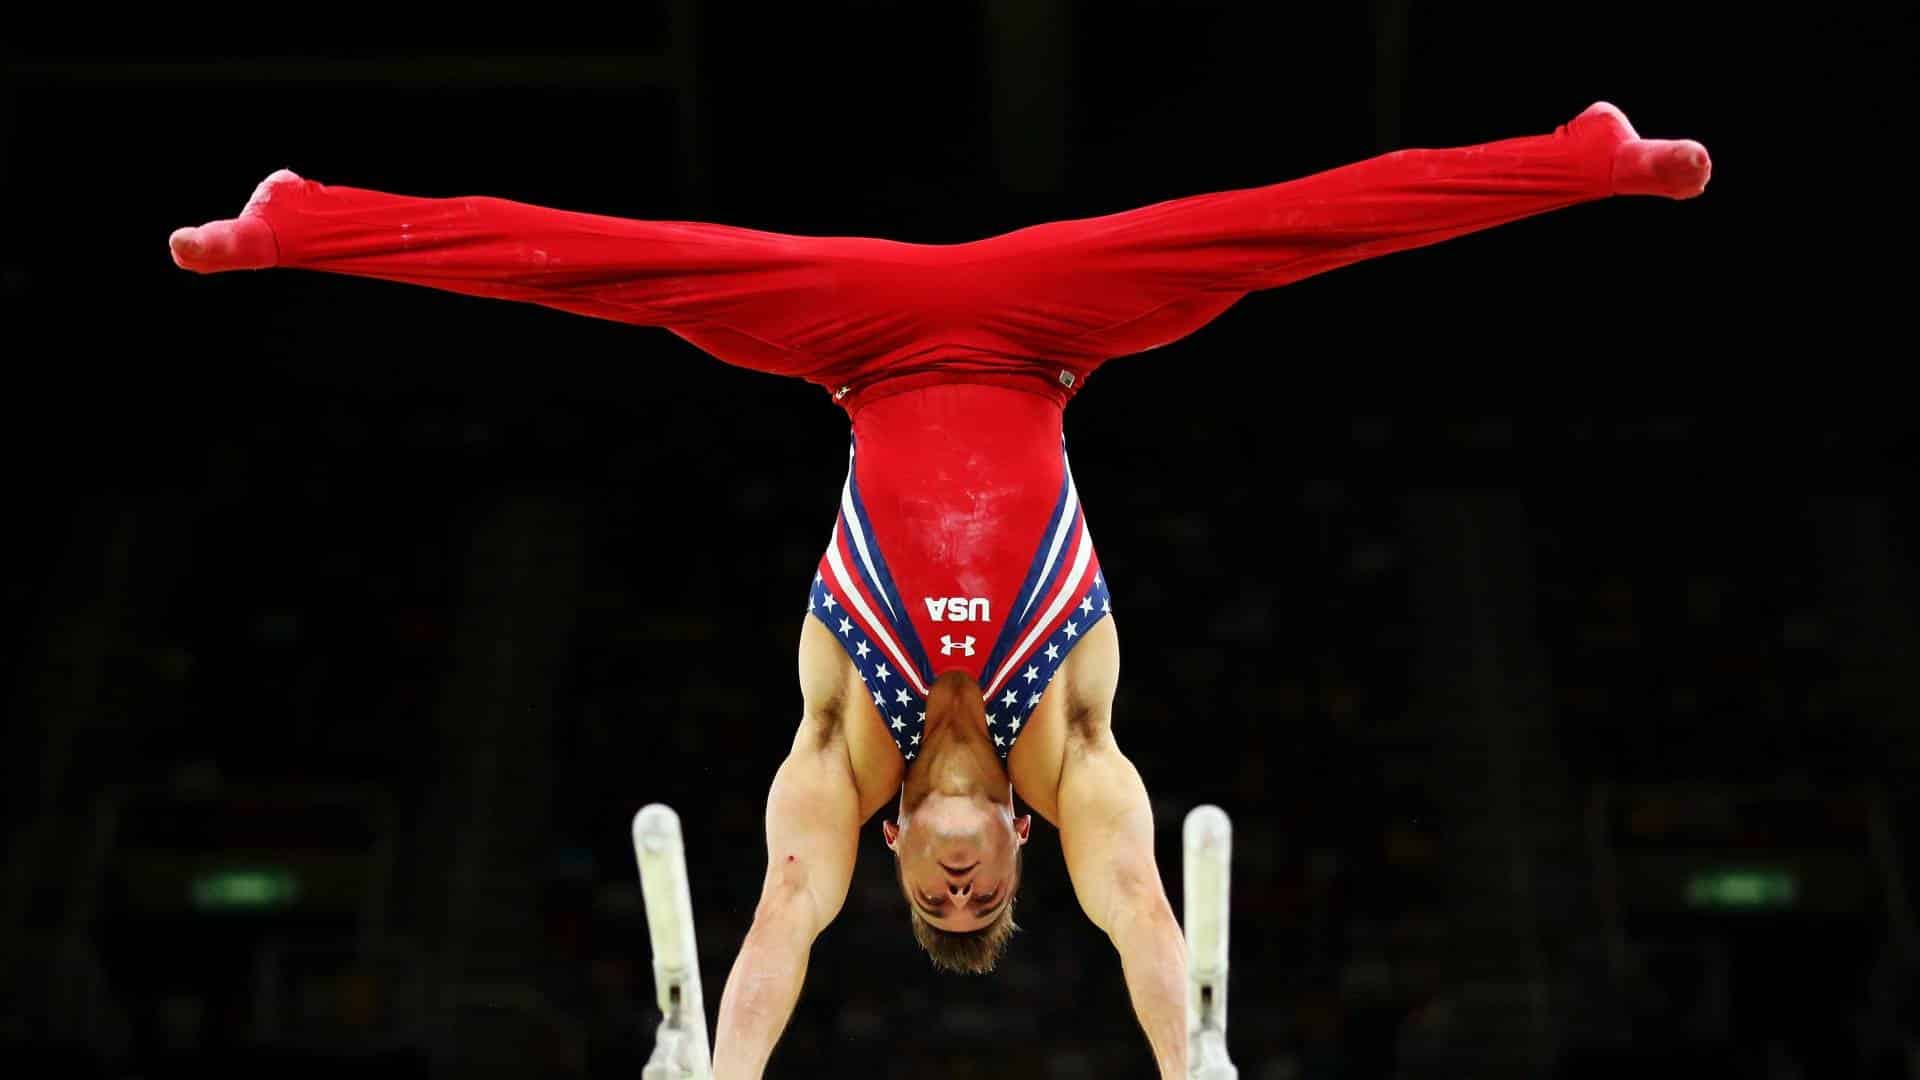 7 Ways to Do Gymnastics Tricks